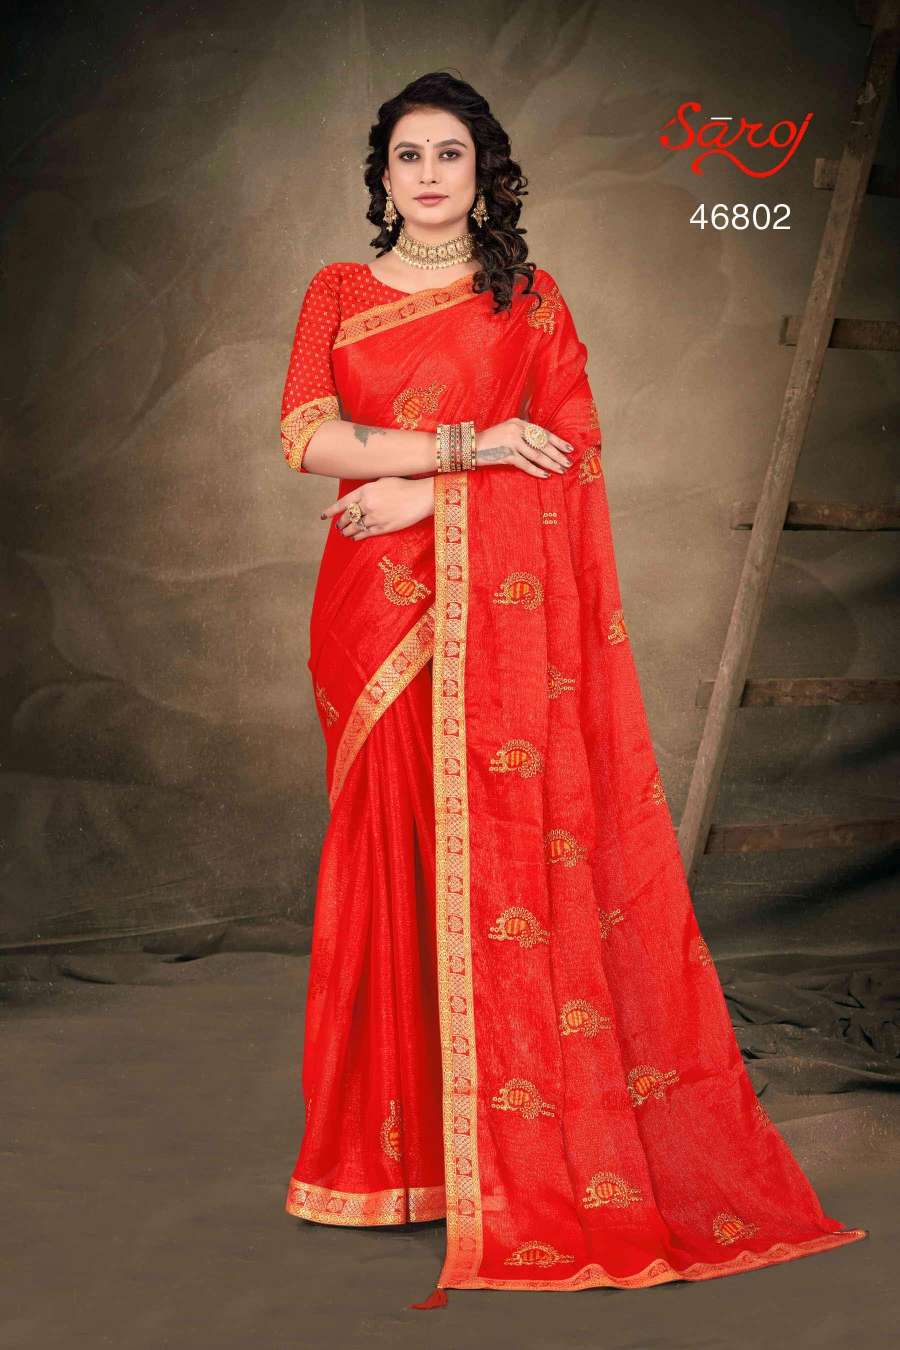 Saroj textile presents Shraddha vol 3 casual sarees catalogue